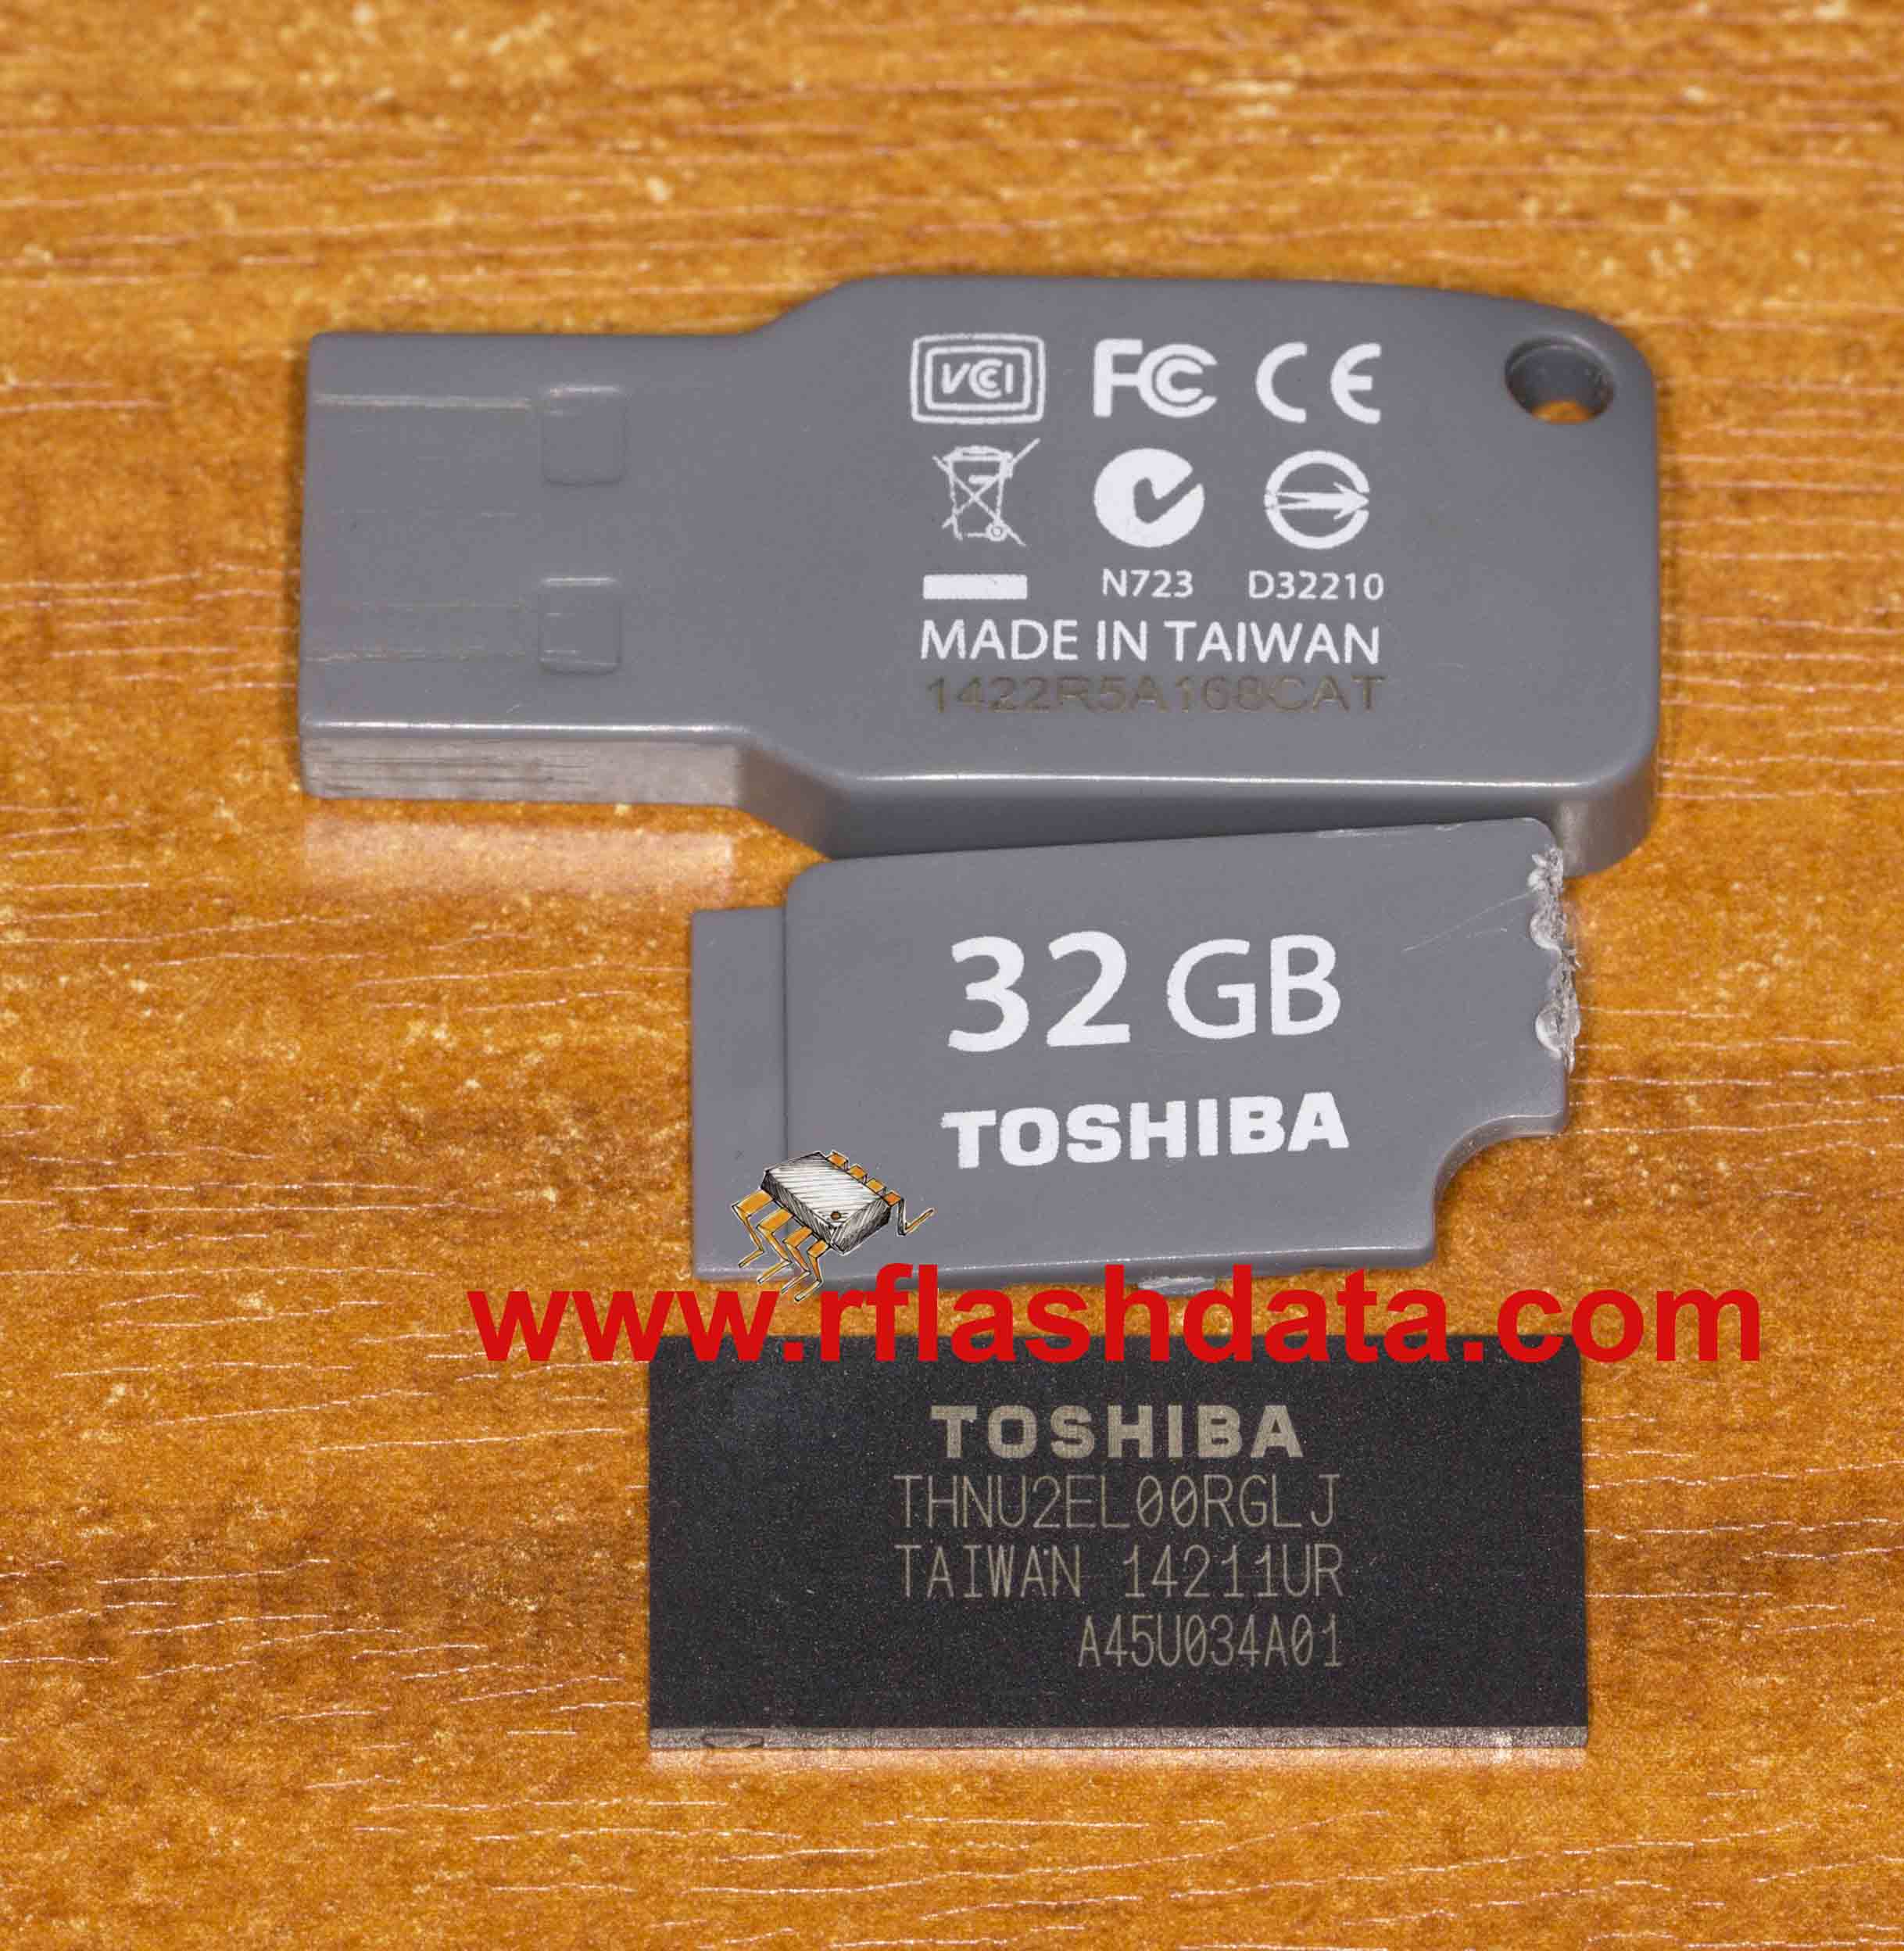 Toshiba THNU2EL00RGLJ 14211UR A45U034A01